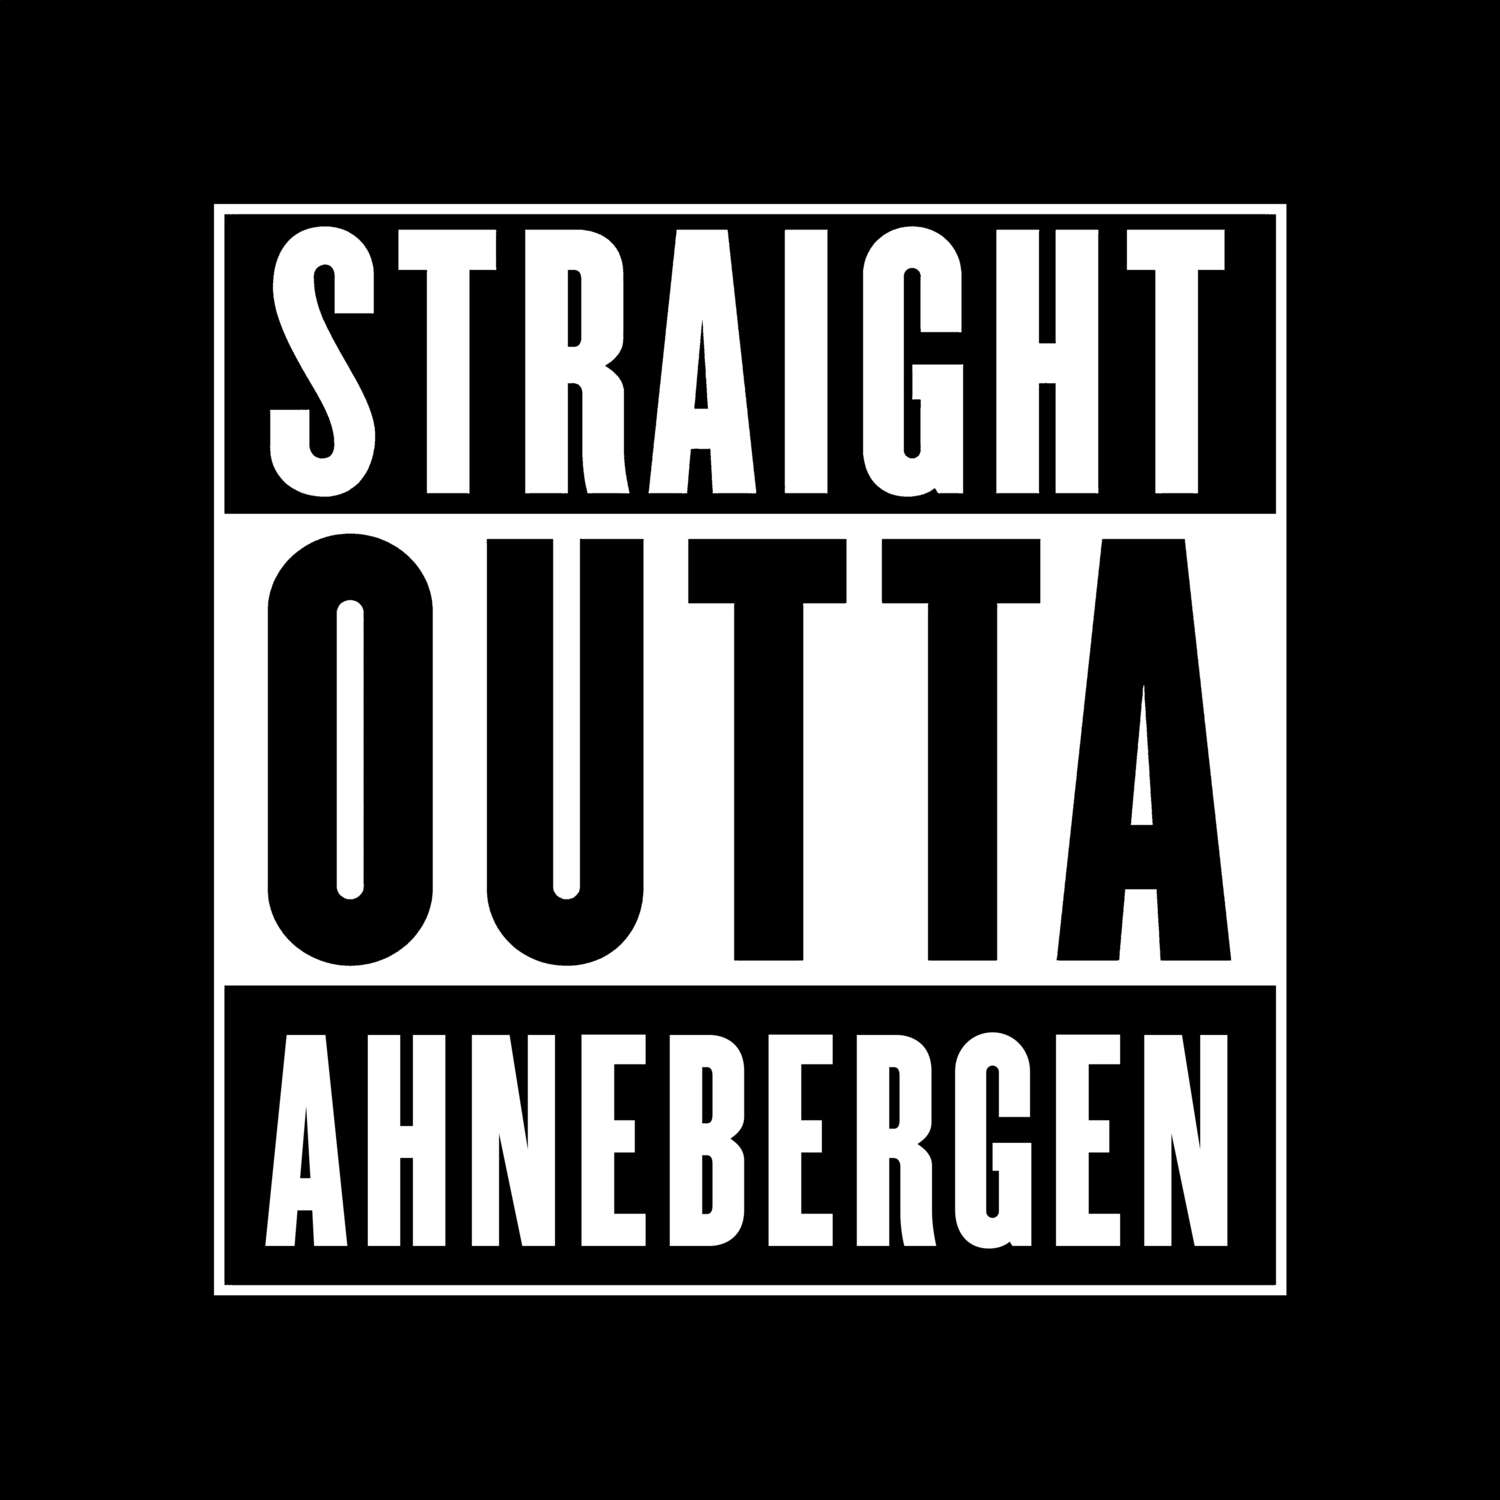 Ahnebergen T-Shirt »Straight Outta«